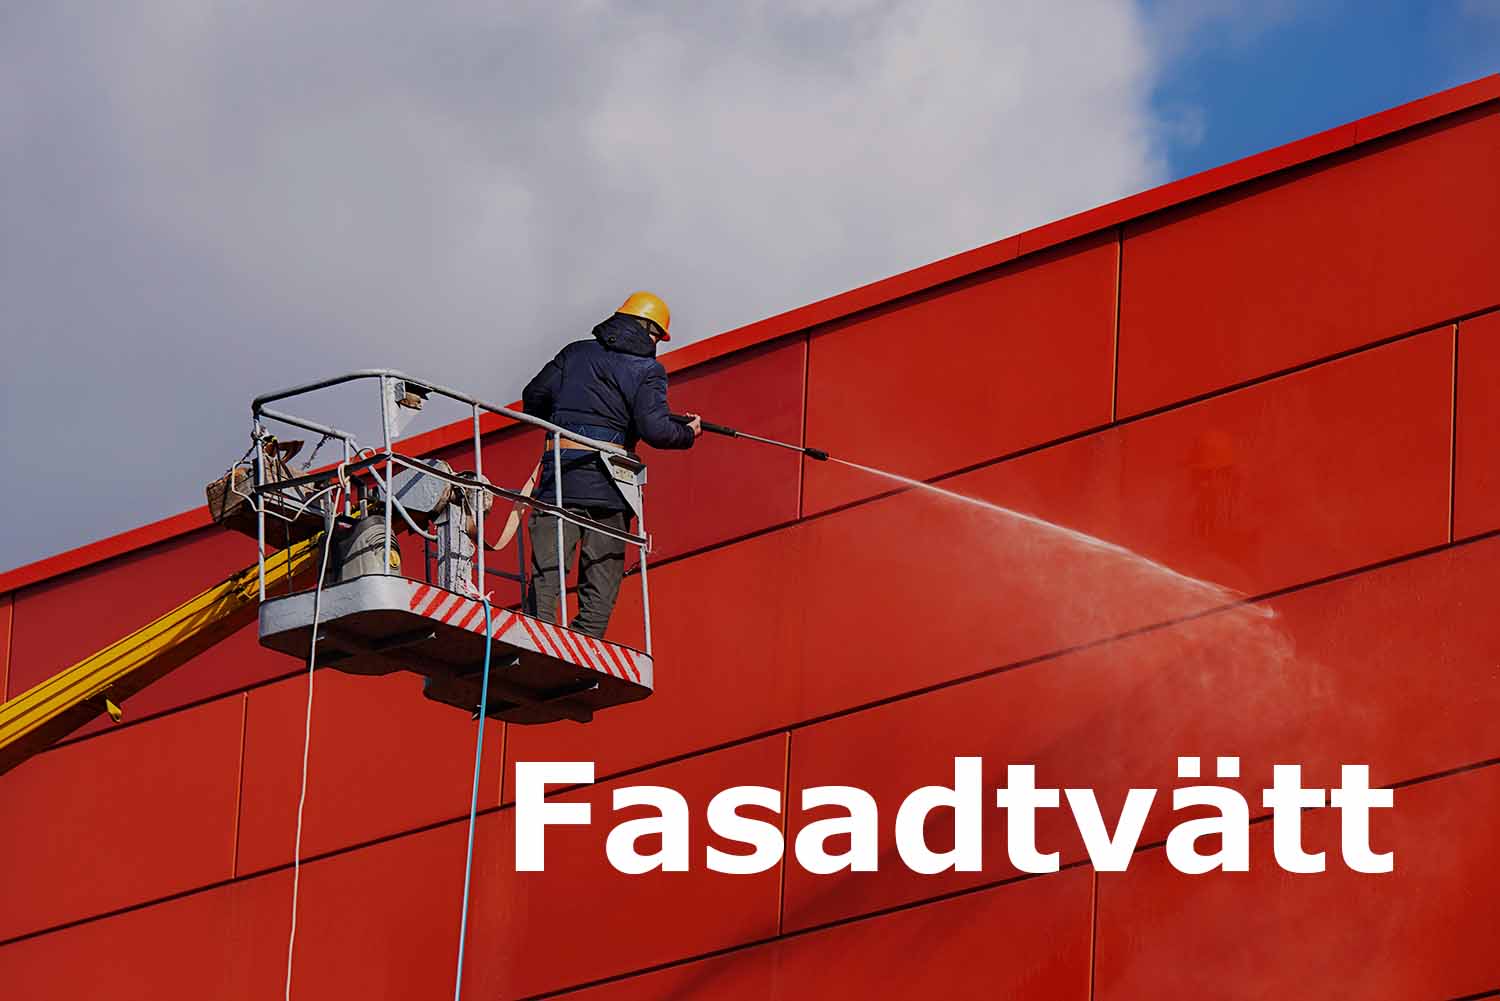 Professionell fasadtvätt i Halmstad, Hylte och Gislaved